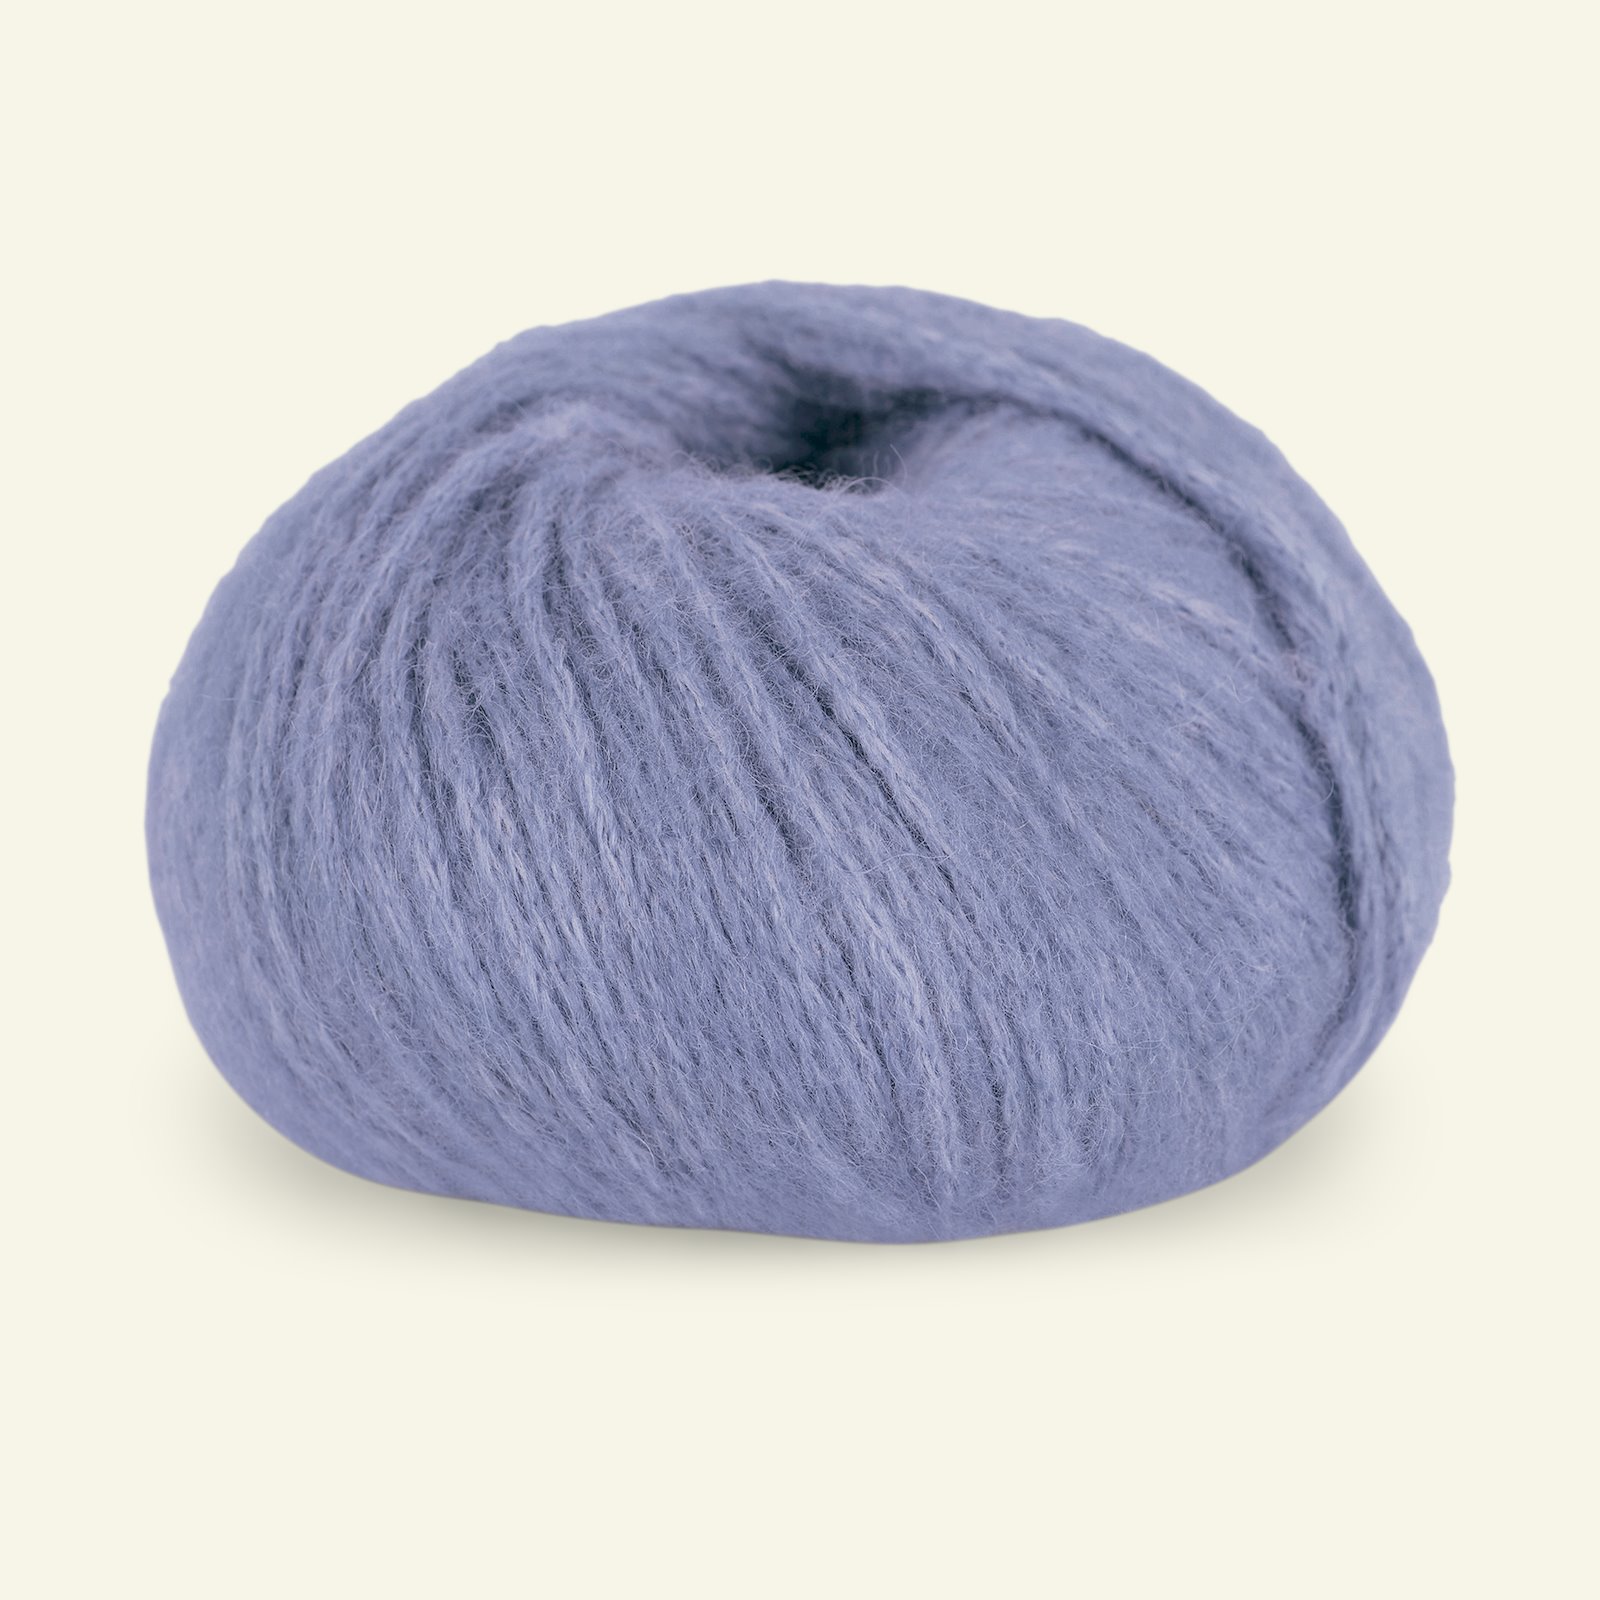 Du Store Alpakka, alpaca mixed yarn "Pus", lavender (4062) 90000742_pack_b